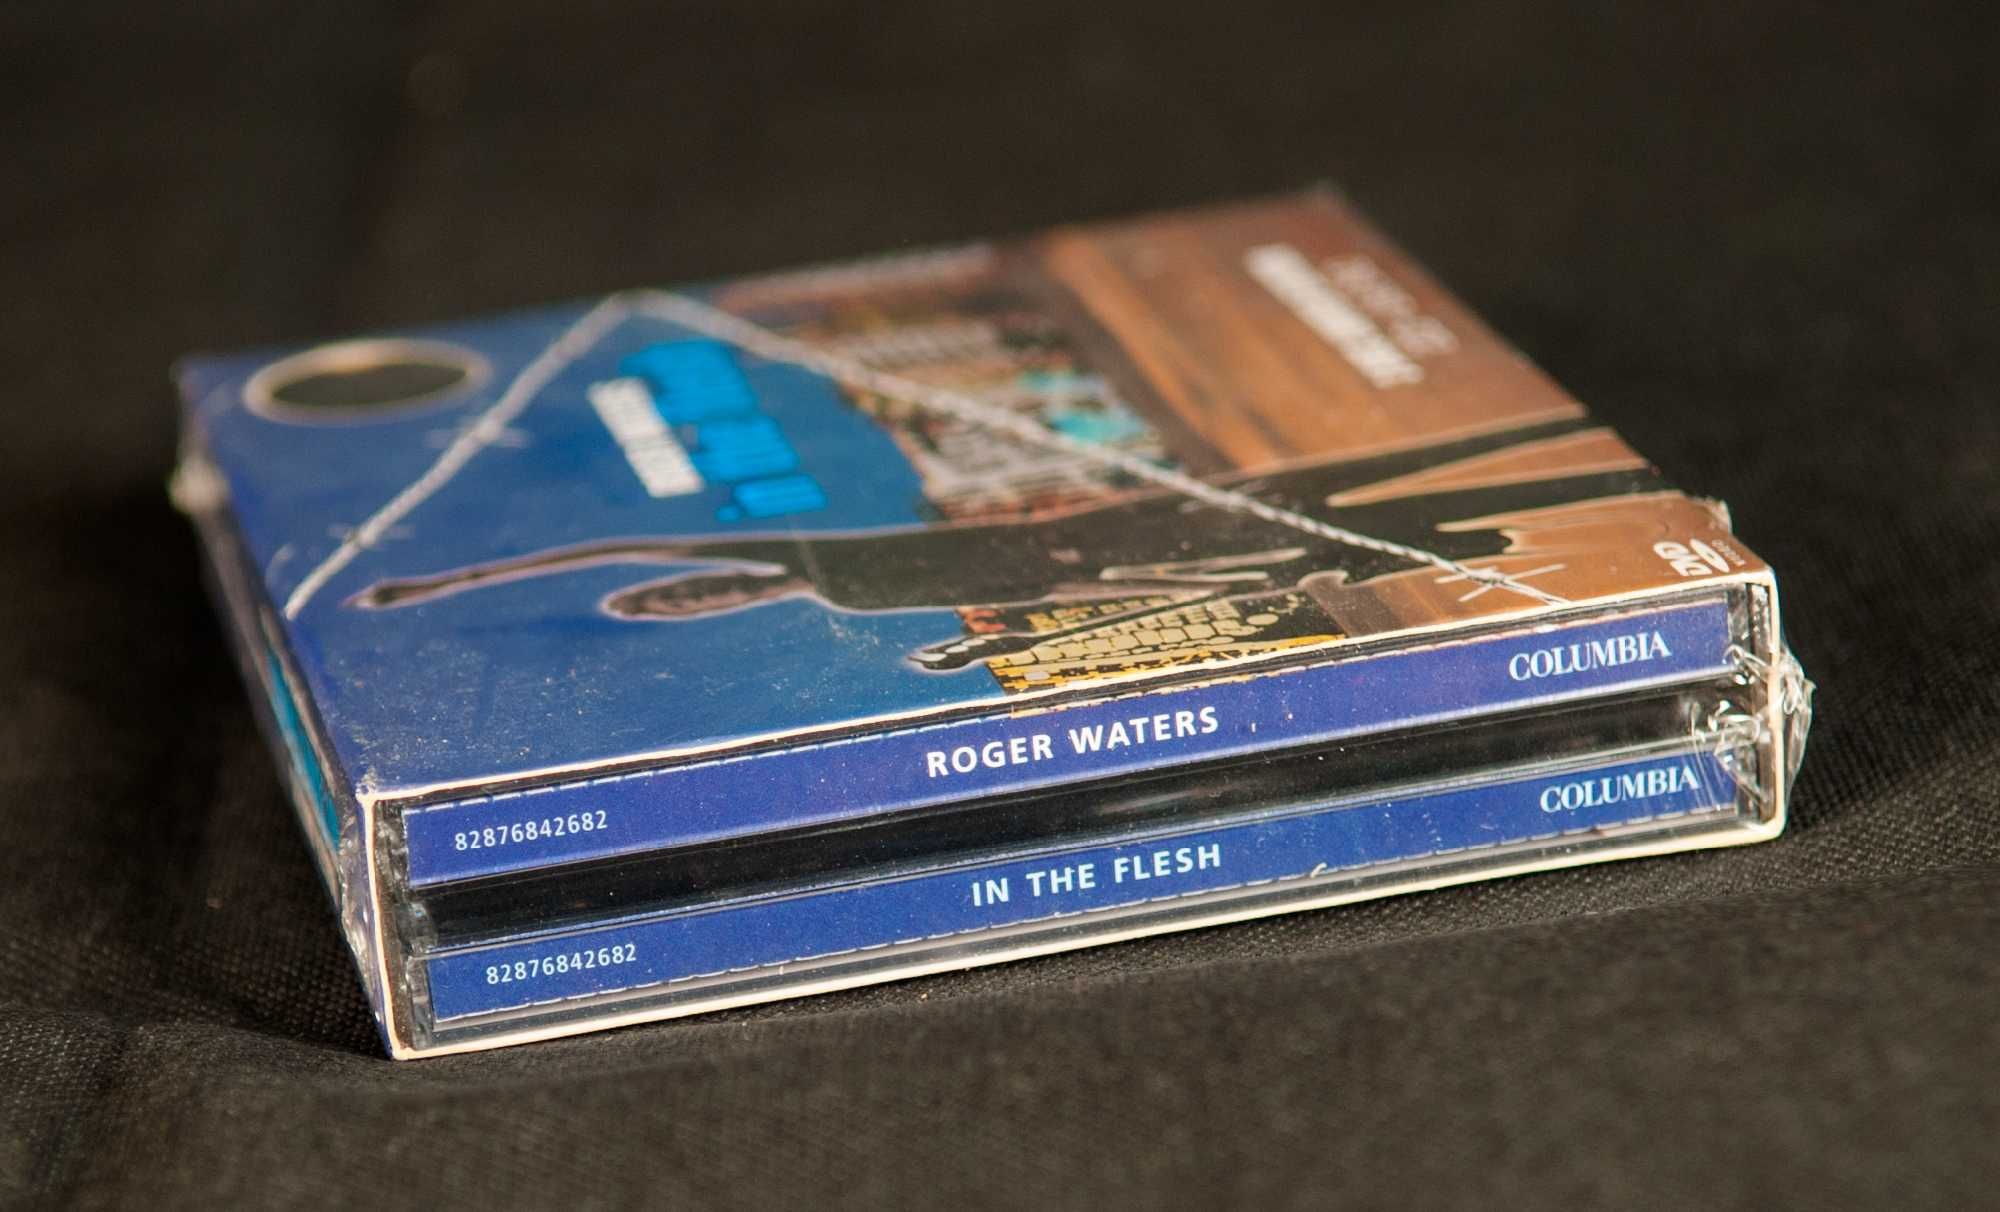 Roger Waters - In The Flesh Edição limitada 2CD e 1 DVD NOVO